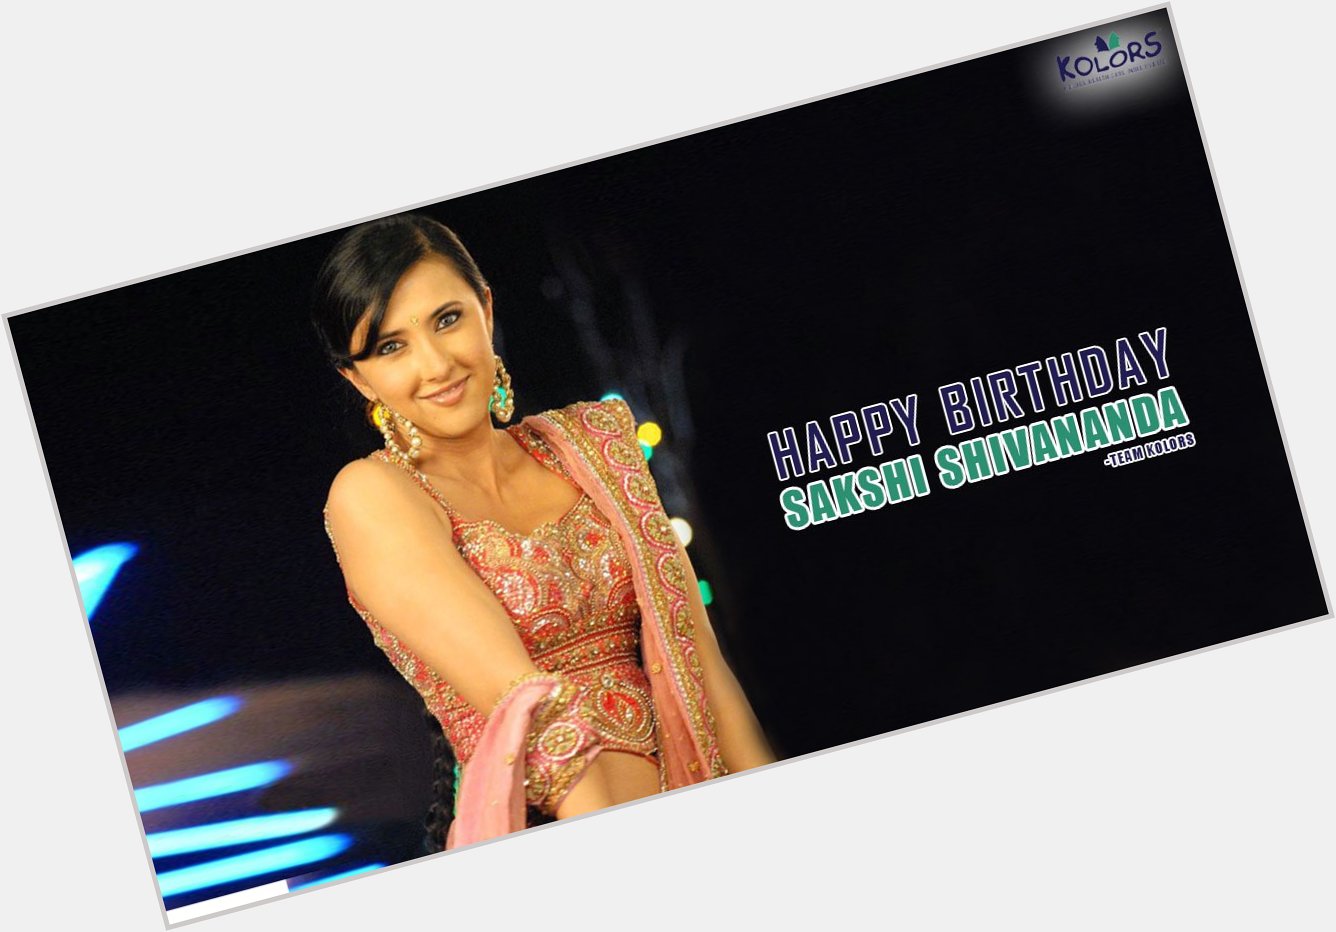 Team Kolors Wishes Sakshi Shivananda A Very Happy Birthday.
Sakshi Shivanand   